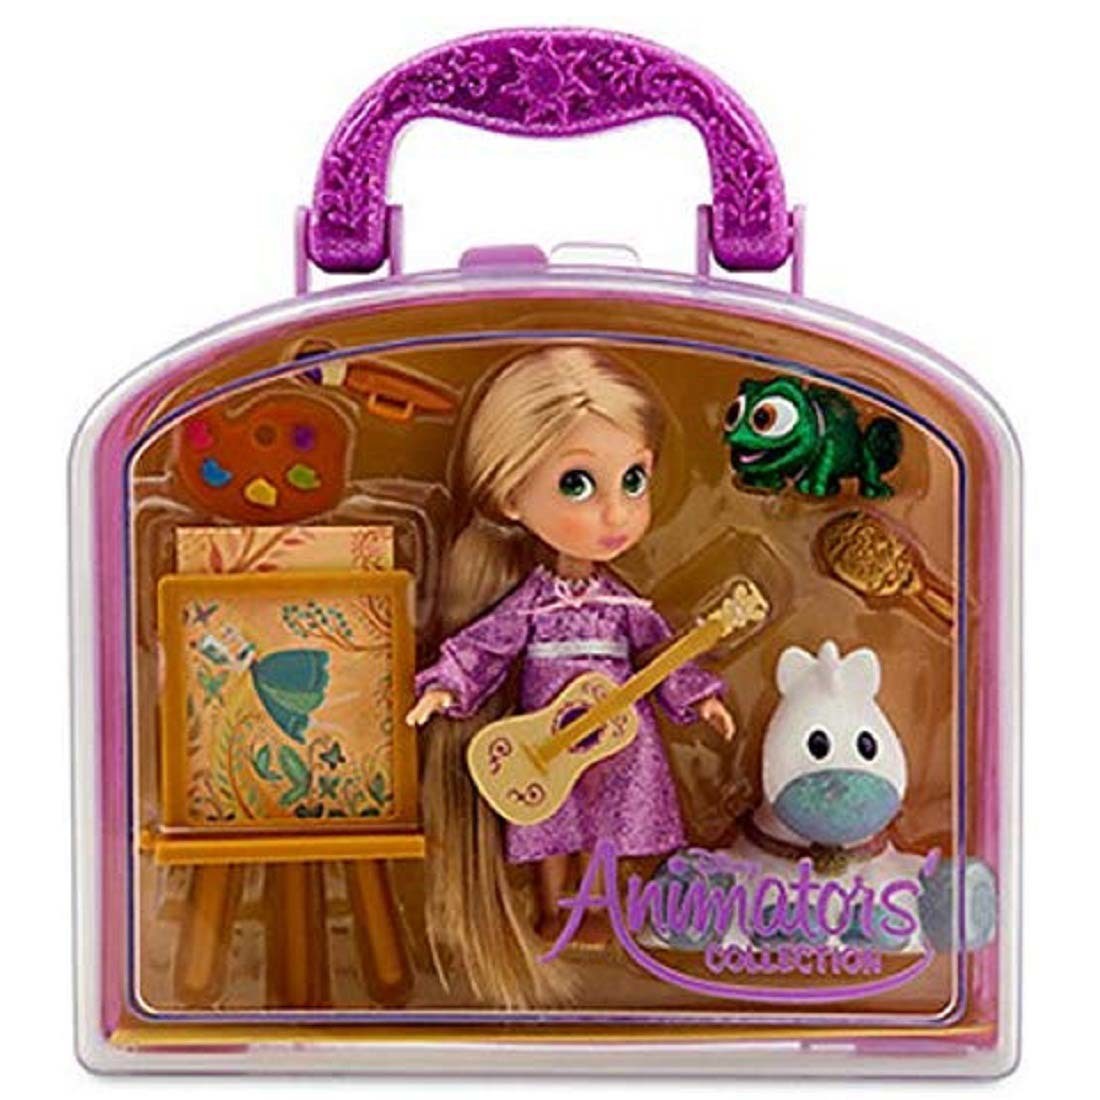 Подарок игрушка кукла. Игровой набор Disney Animators collection Mini. Набор мини принцесс Диснея Аниматорс. Чемоданчик мини Аниматорс Рапунцель. Кукла Рапунцель Аниматорс.